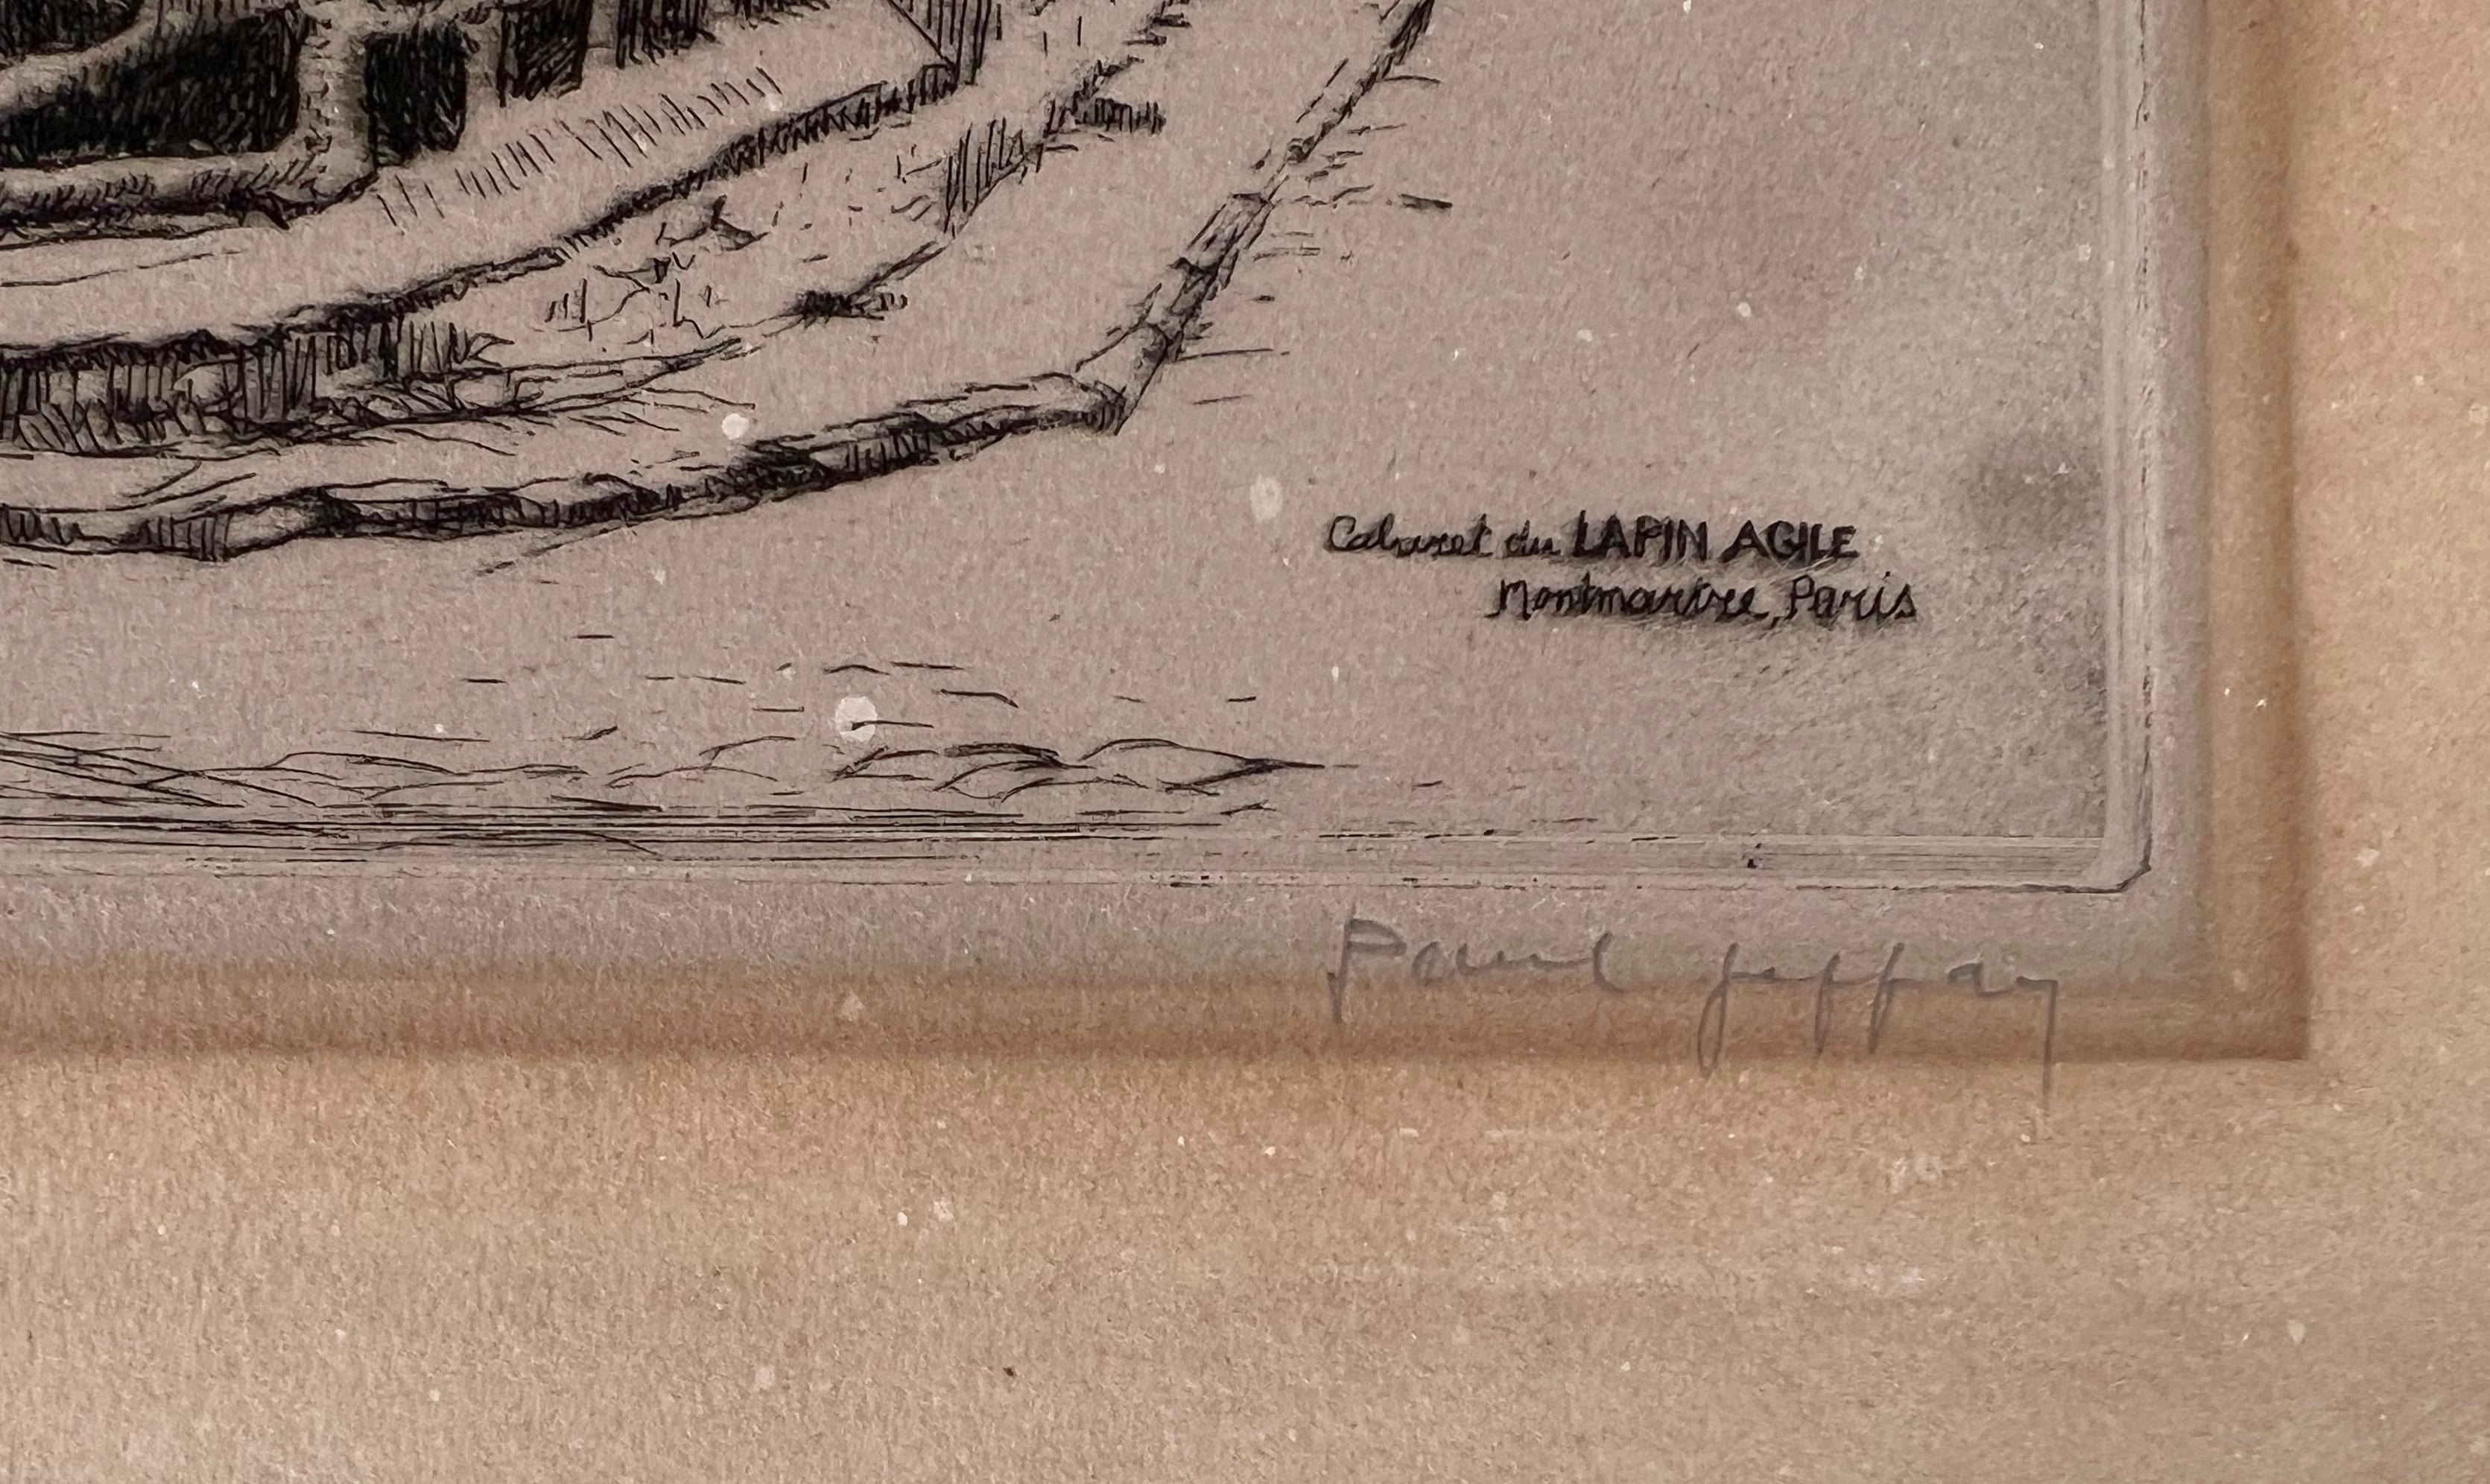 Caberet du Lapin Agile, Montmartre, Paris 1920  2